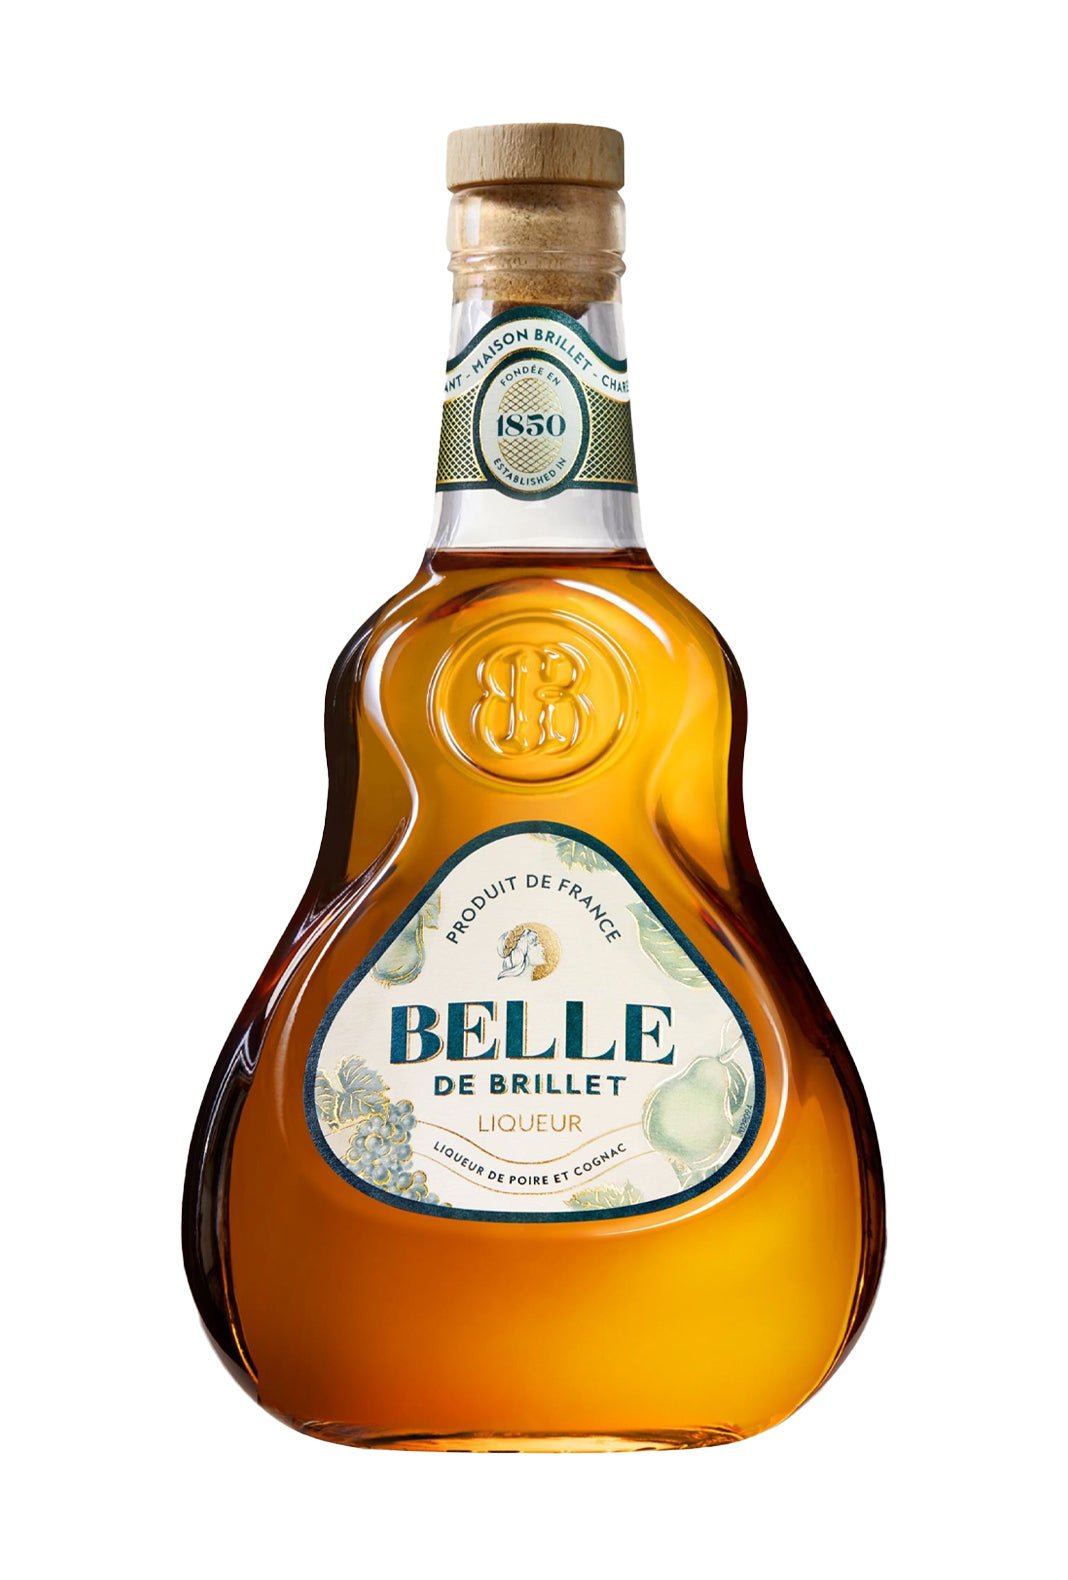 Brillet Liqueur 'Belle de Brillet' Poire William & Cognac 30% 700ml | Liqueurs | Shop online at Spirits of France